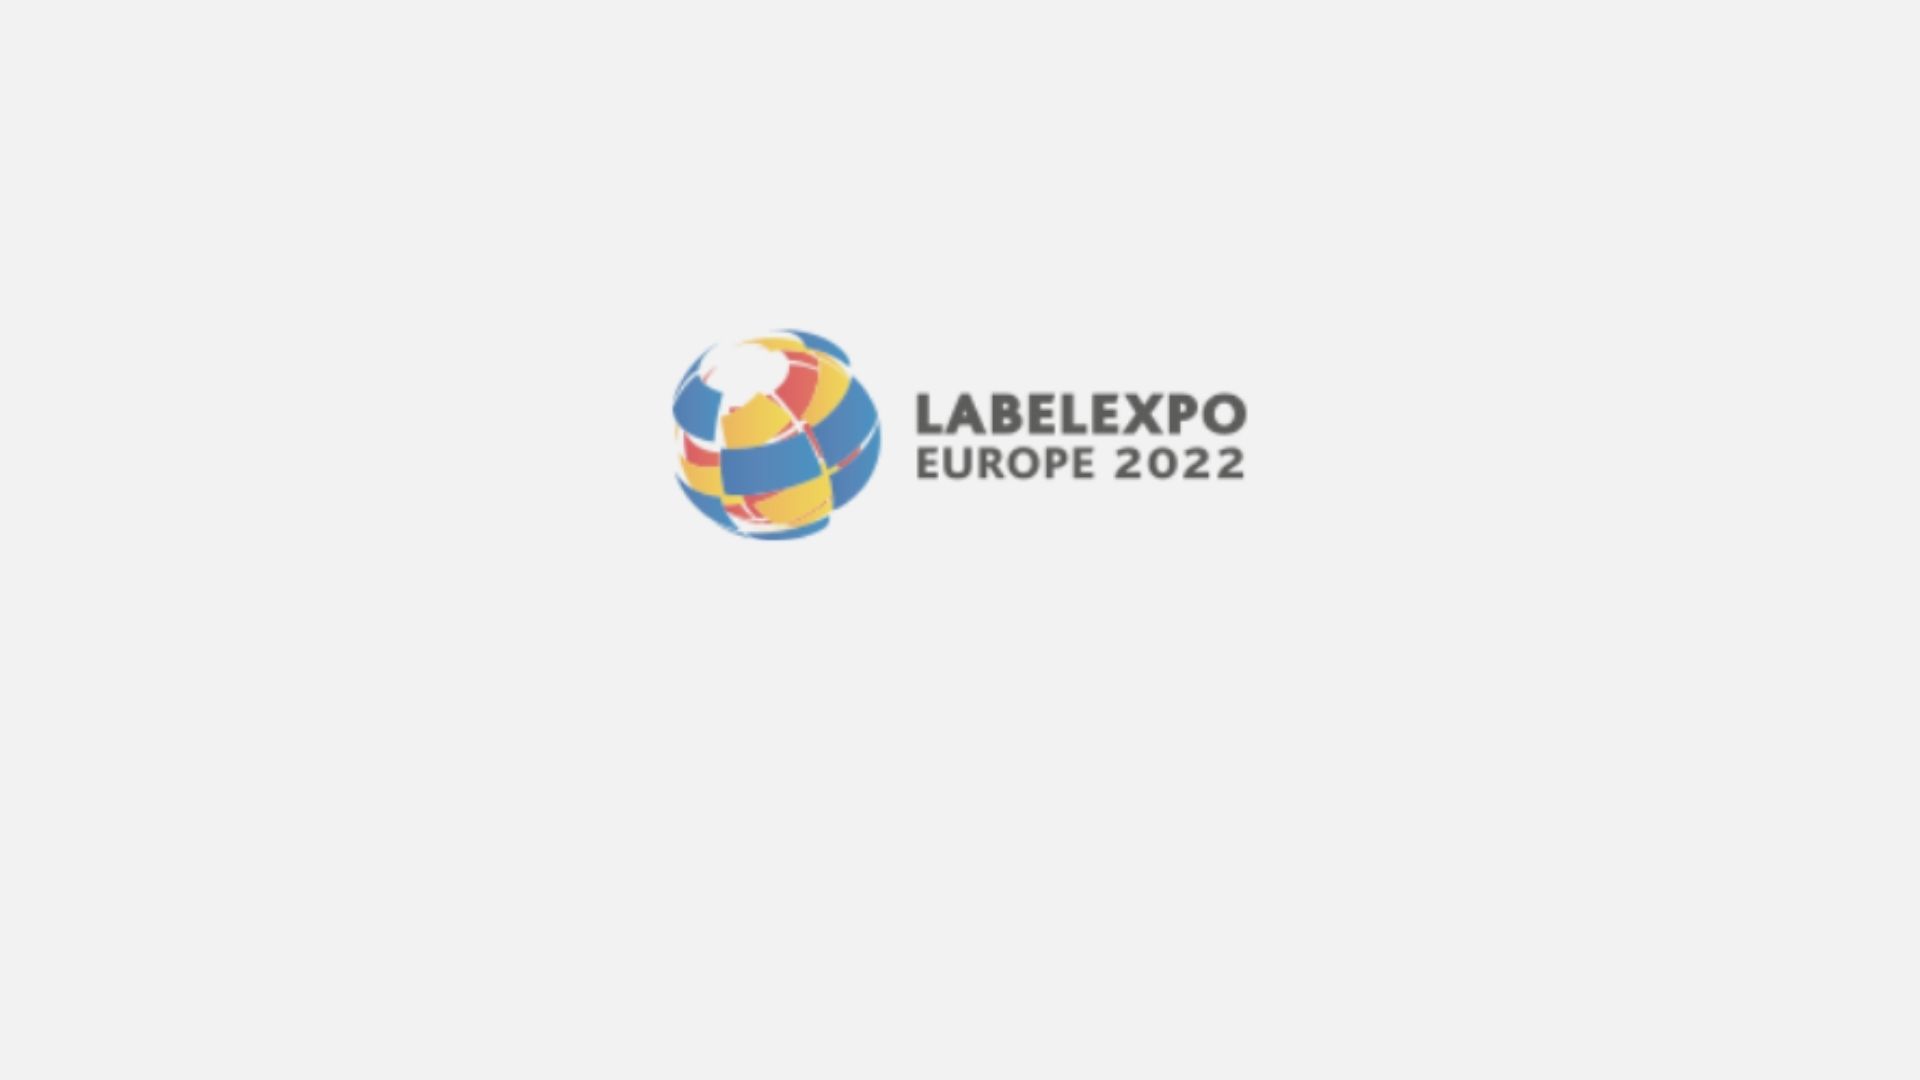 Labelexpo